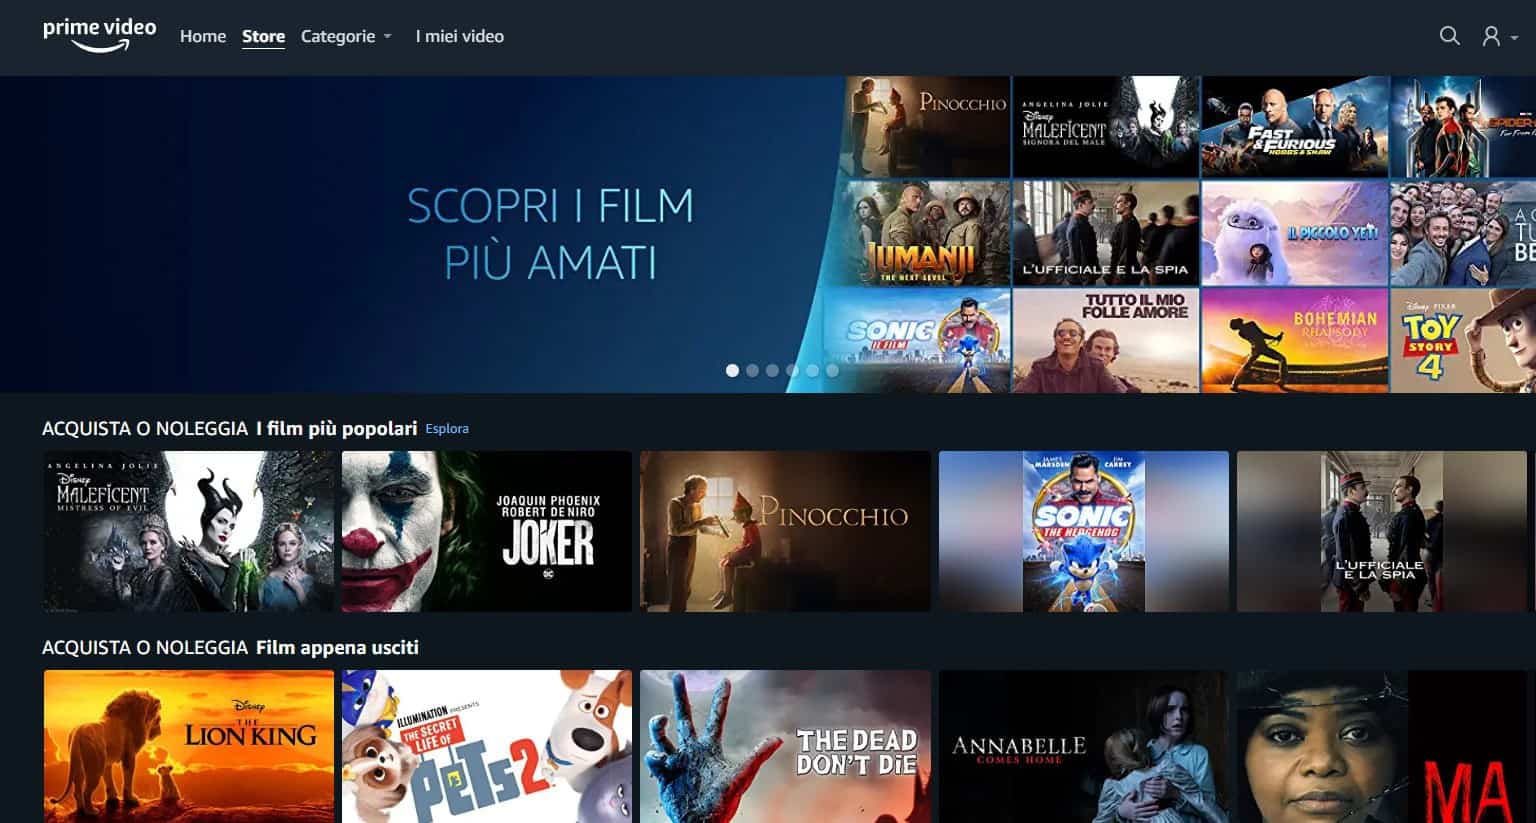 Prime Video Store disponible en Italia con una avalancha de películas y series de televisión